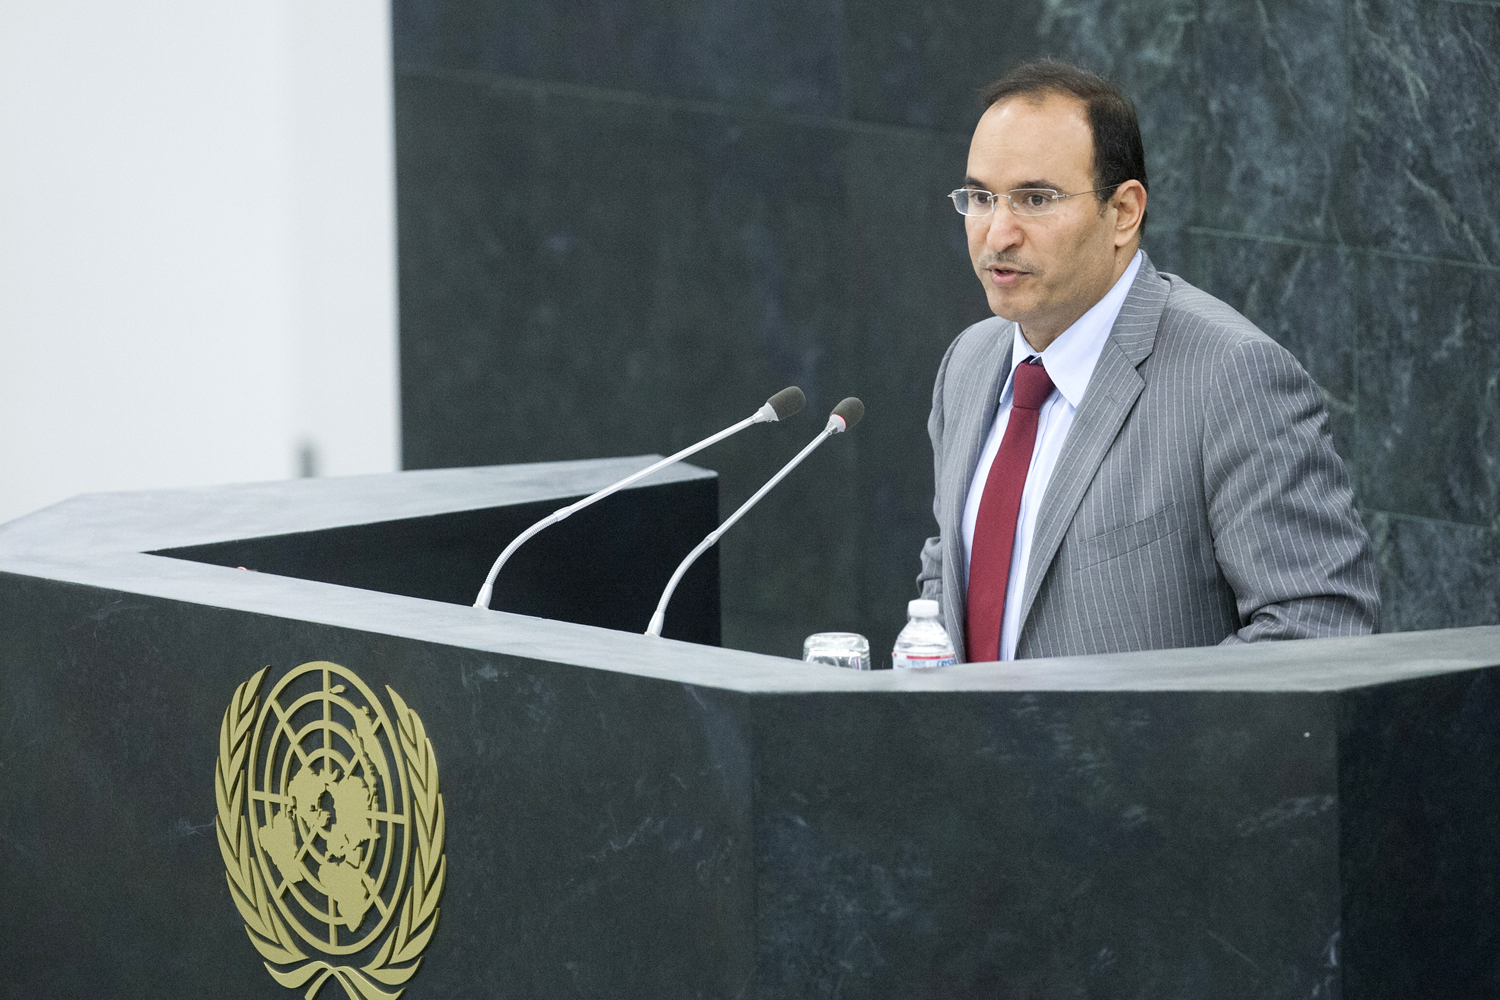 المندوب الدائم لدولة الكويت لدى الأمم المتحدة السفير منصور عياد العتيبي